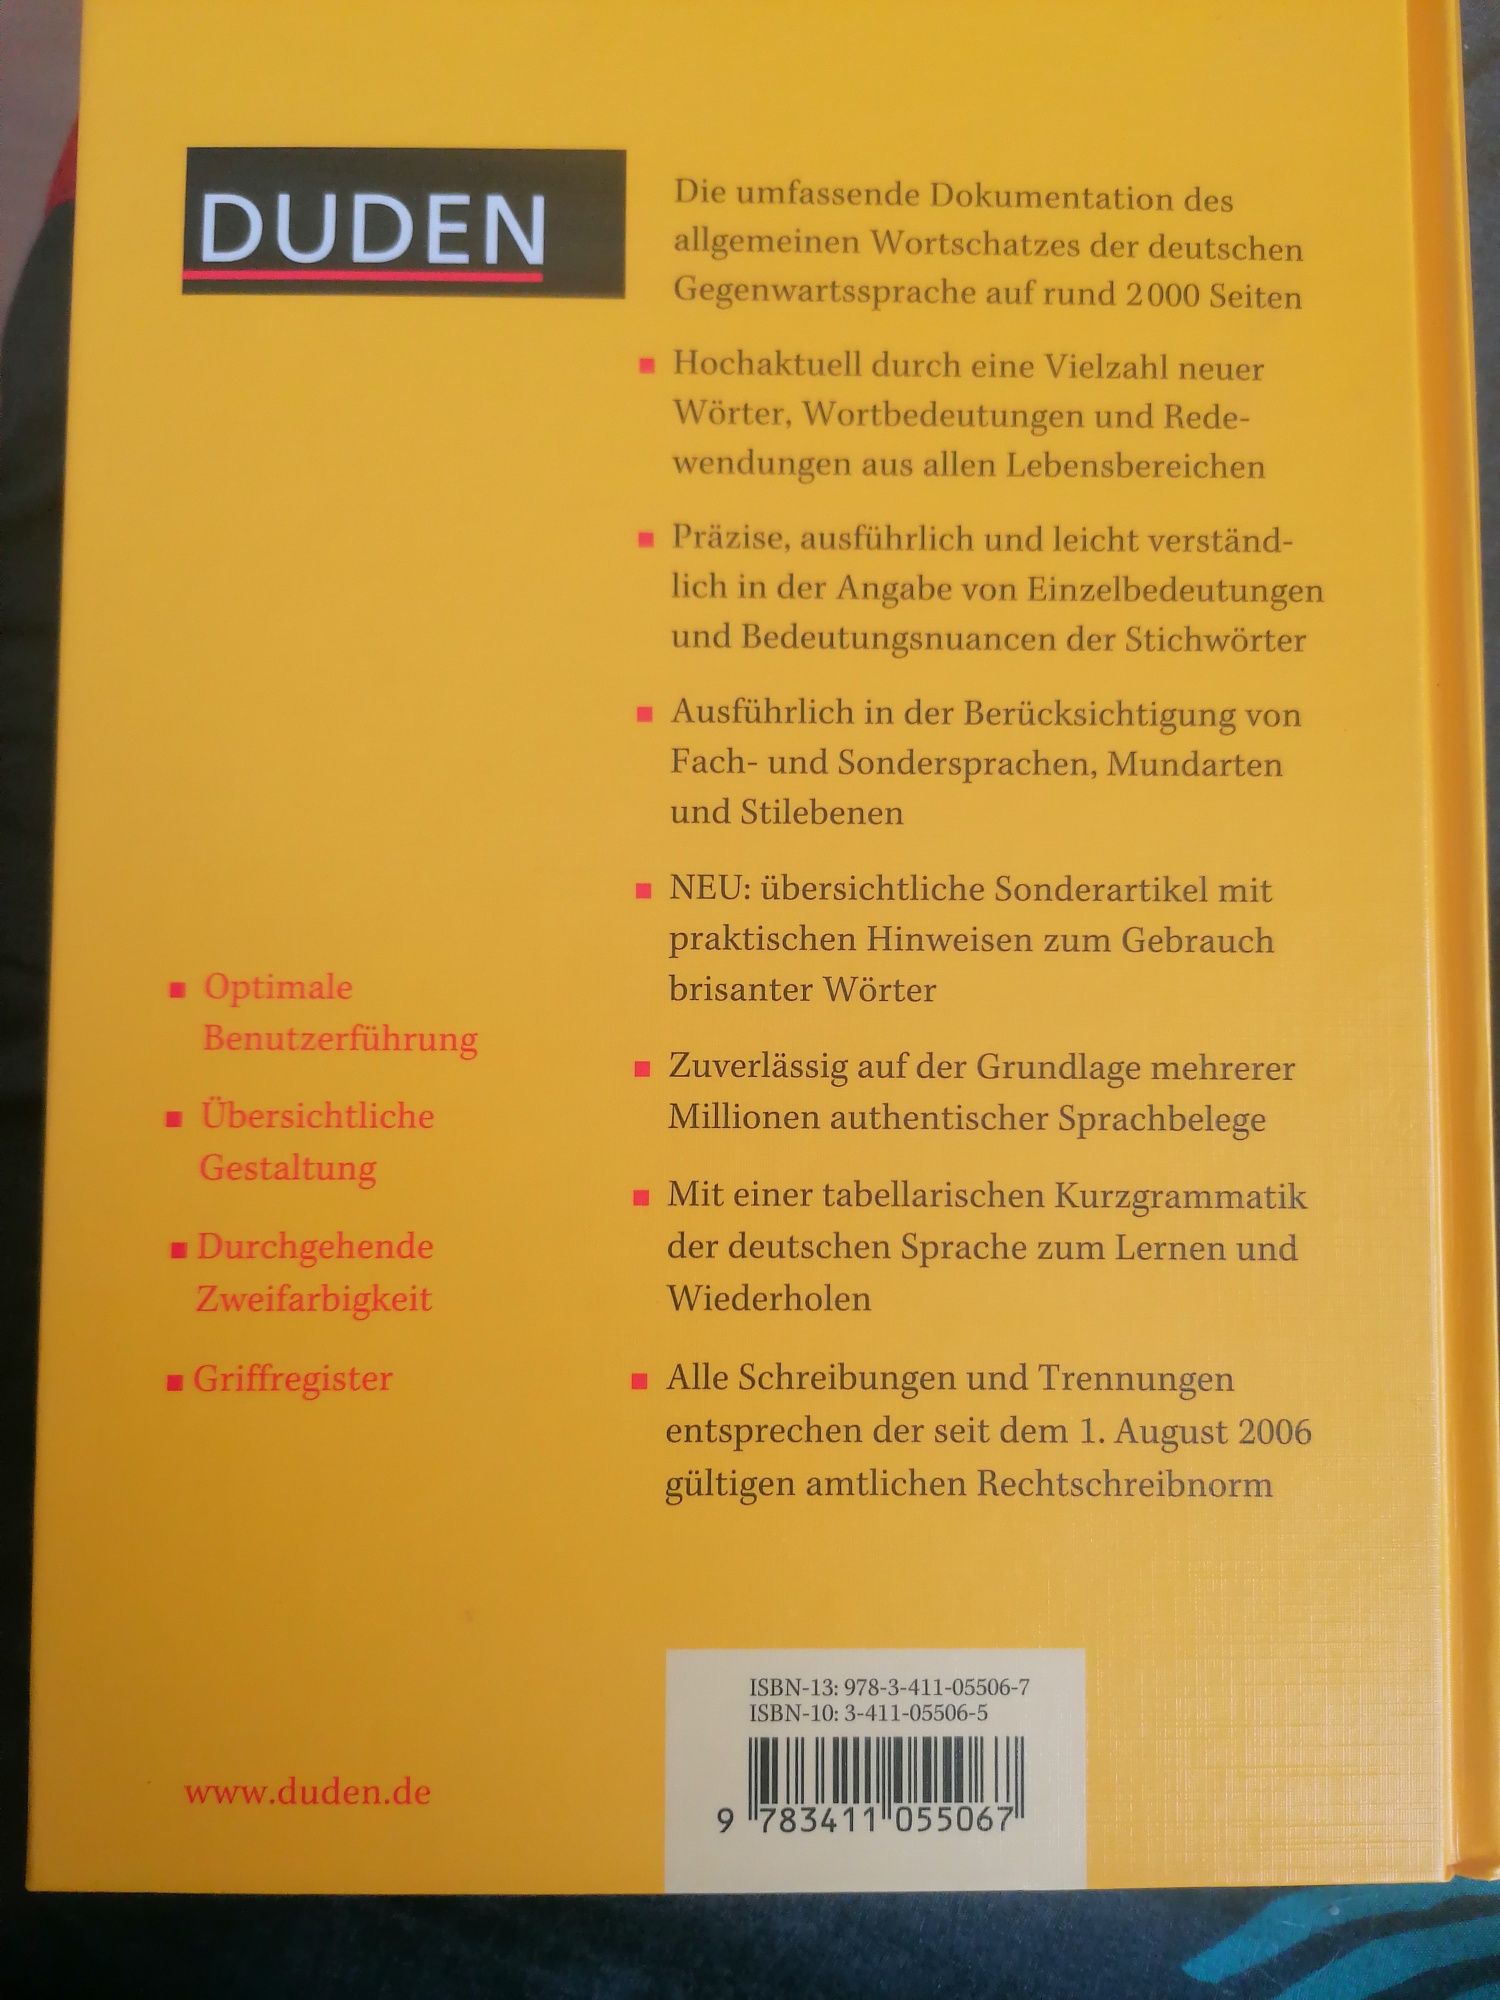 Duden słownik niemiecko-niemiecki